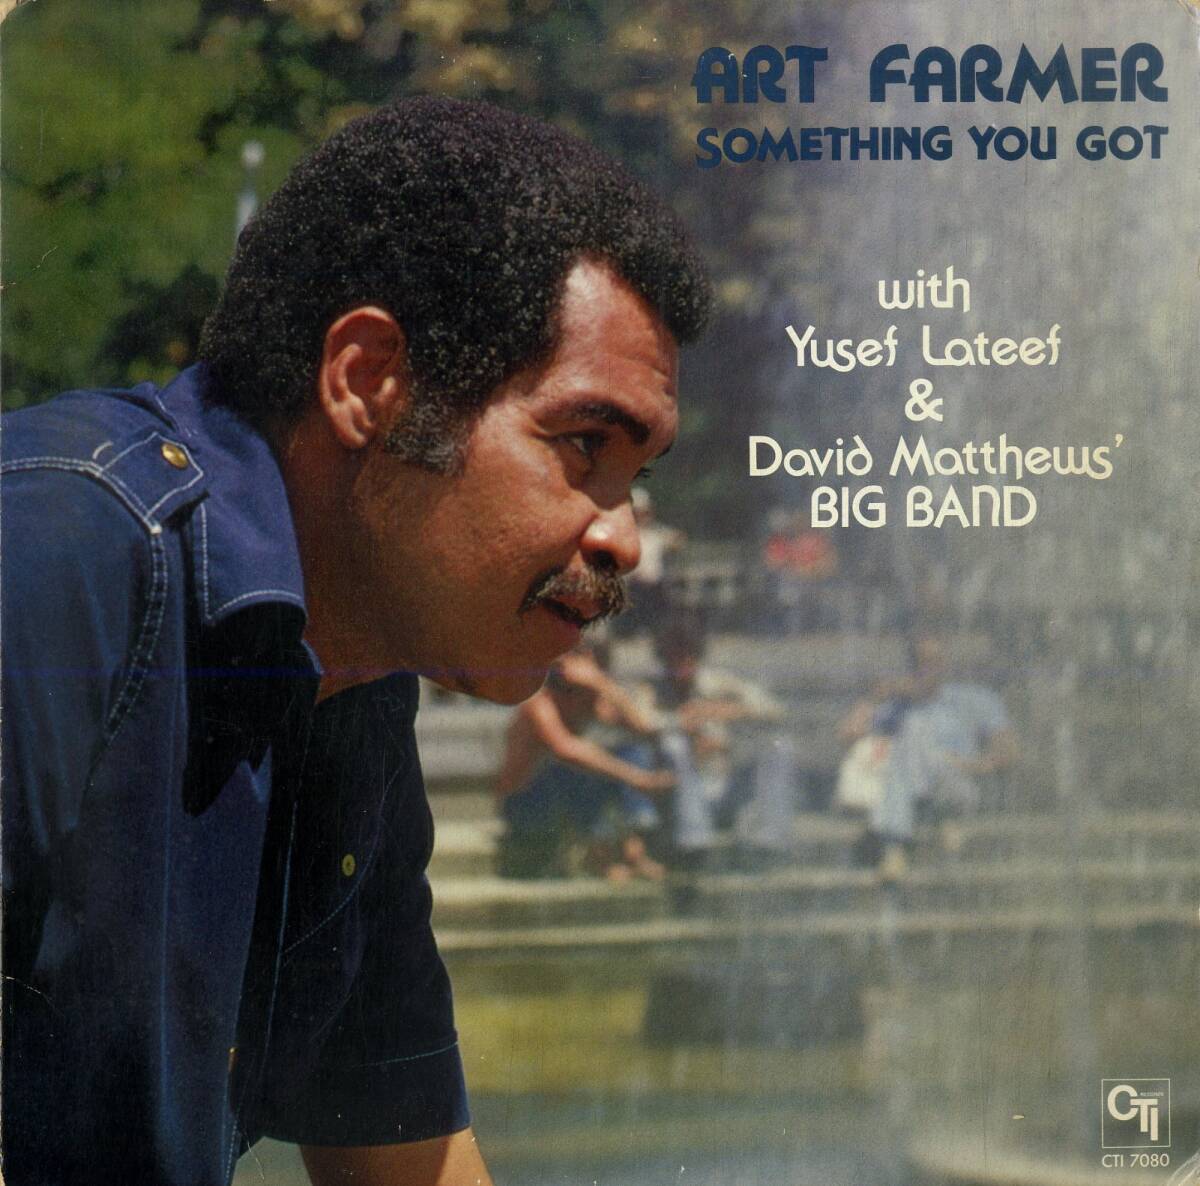 A00593857/LP/アート・ファーマー (ART FARMER)「Something You Got (1977年・CTI-7080・ジャズファンク・コンテンポラリーJAZZ・クールの画像1